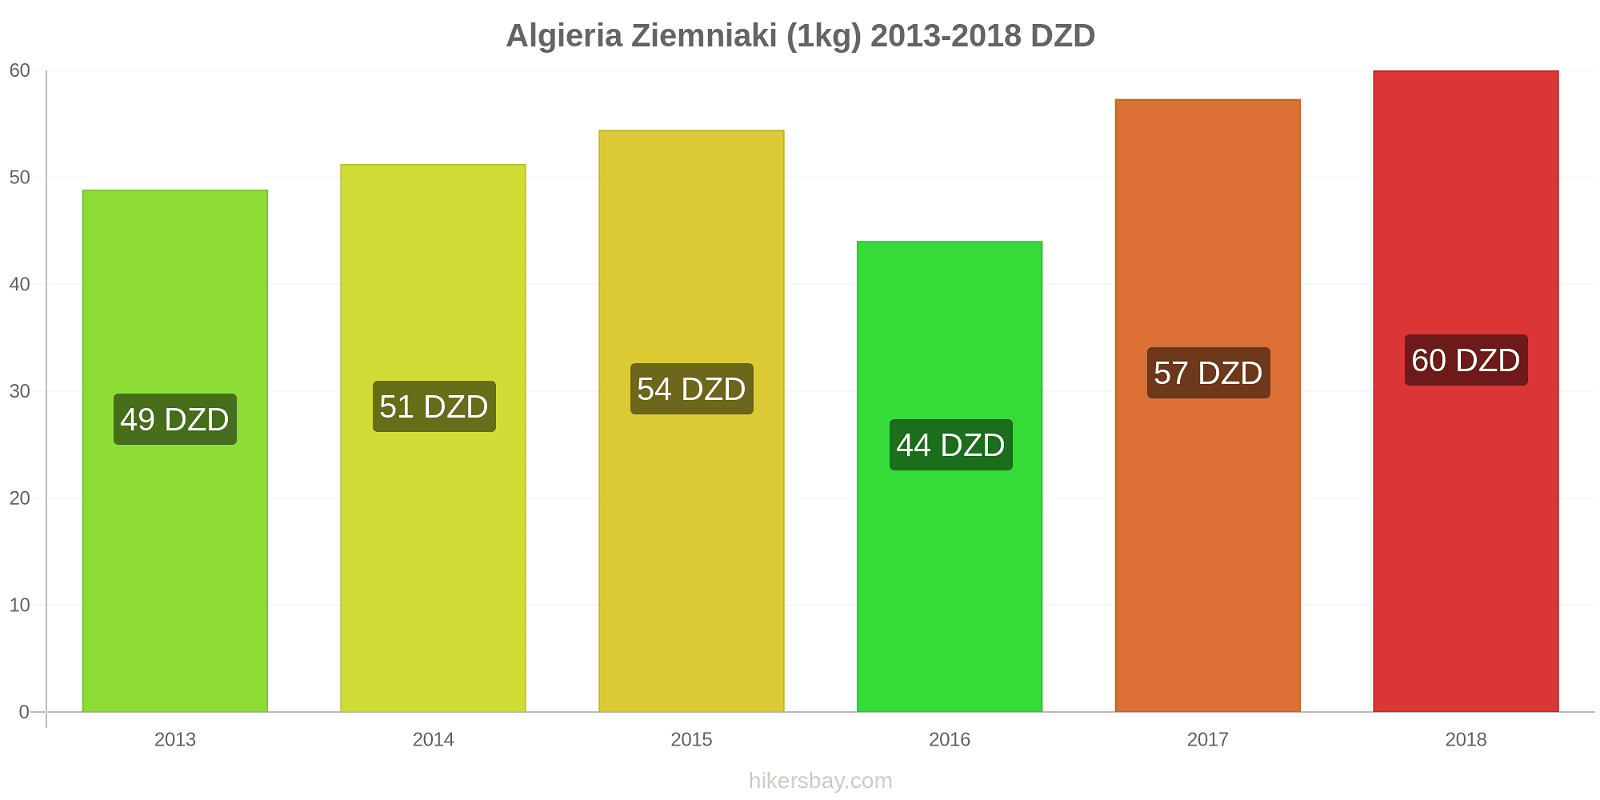 Algieria zmiany cen Ziemniaki (1kg) hikersbay.com